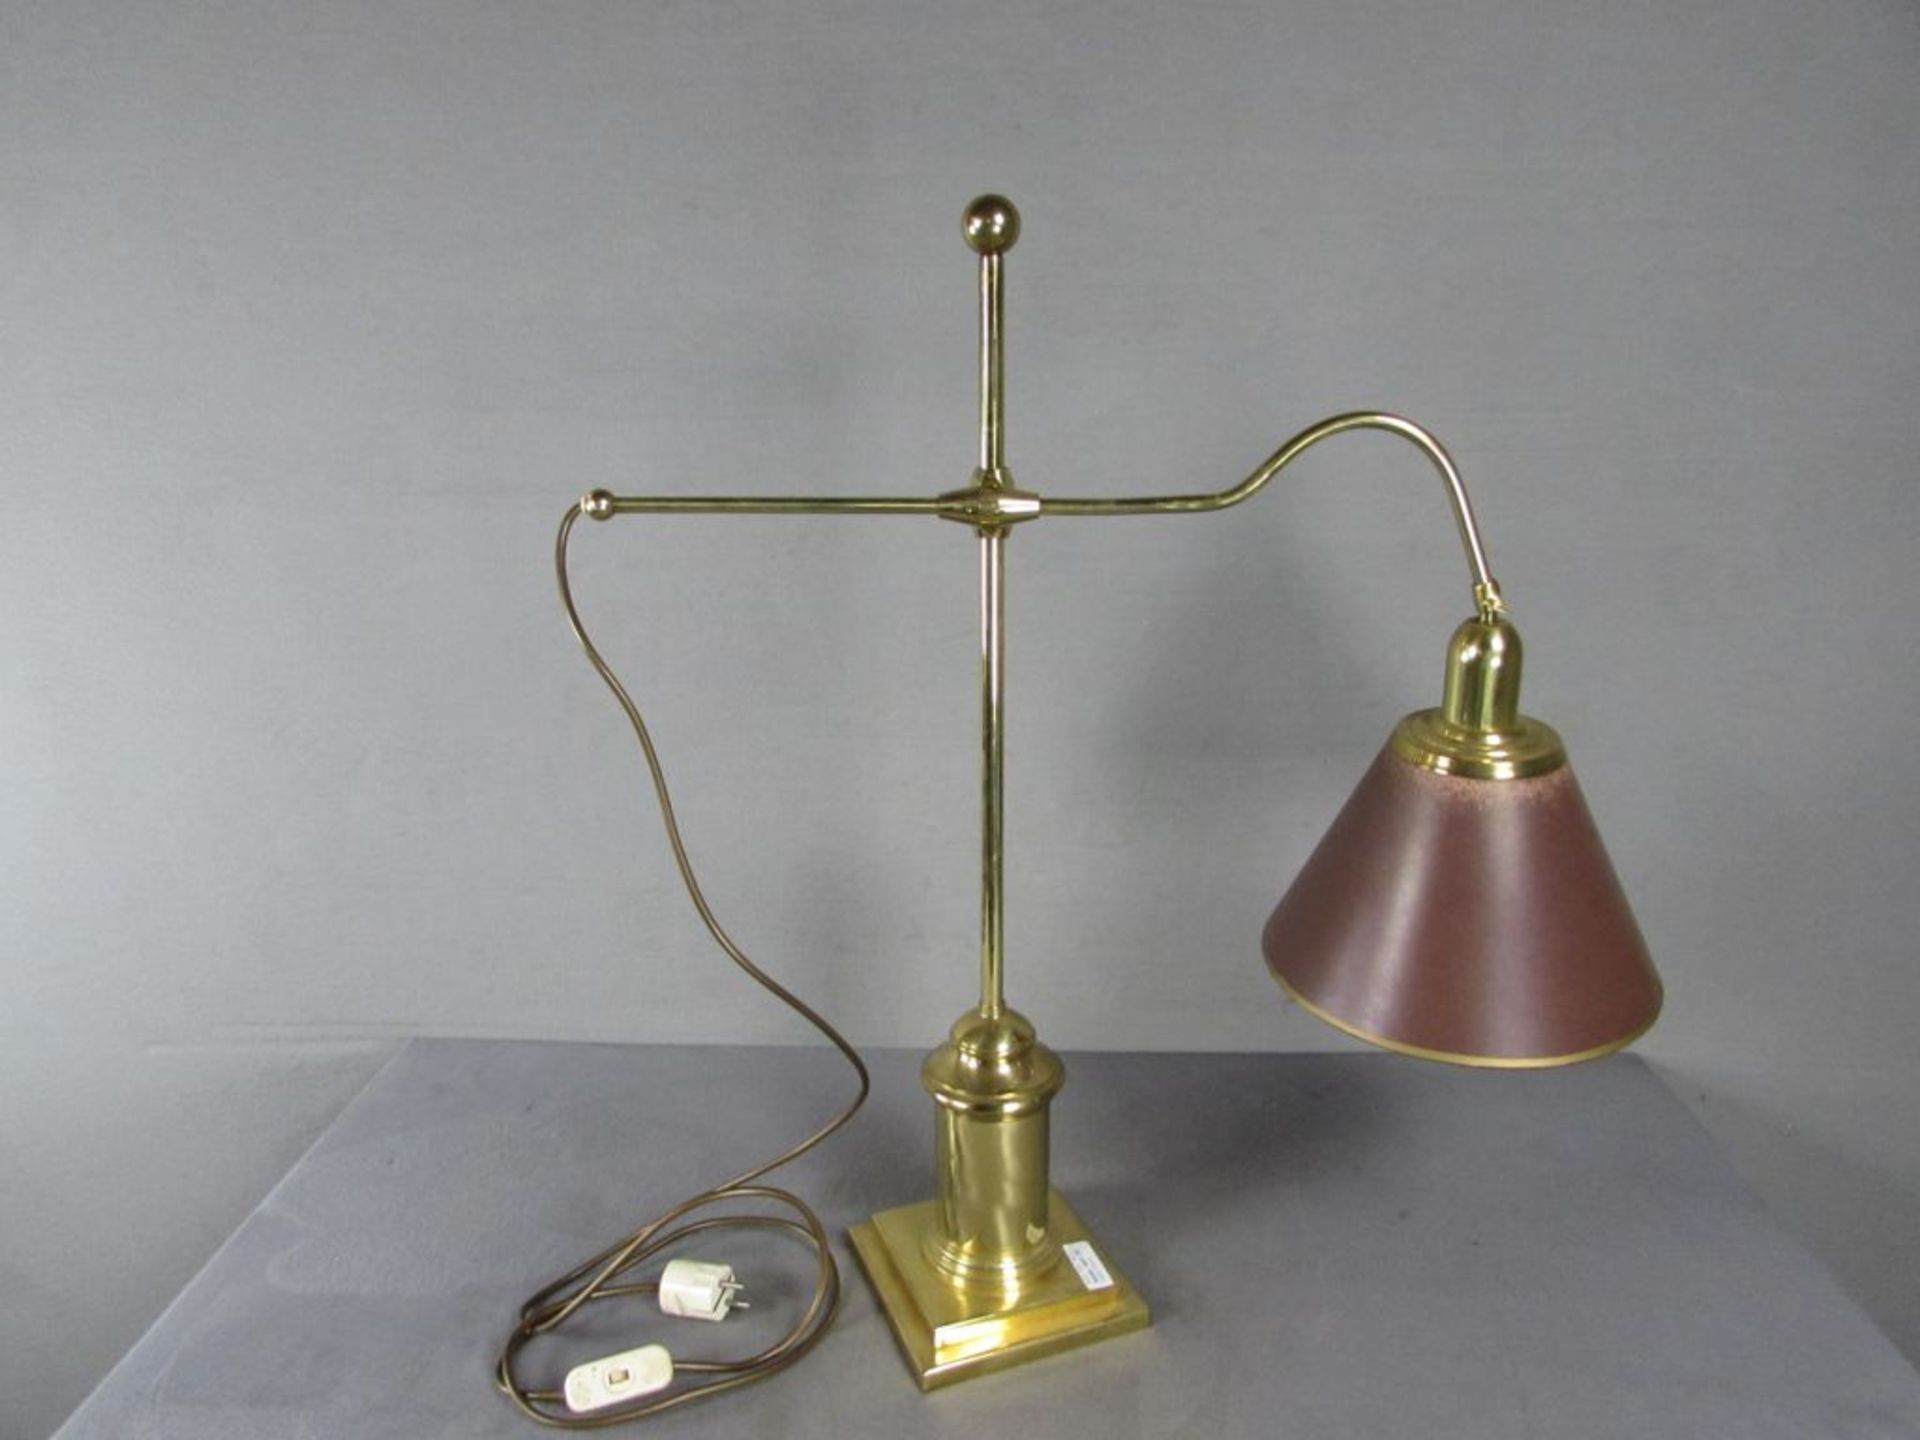 Tischlampe, Messing, mehrfach verstellbar, circa 74 cm hoch - Image 2 of 2